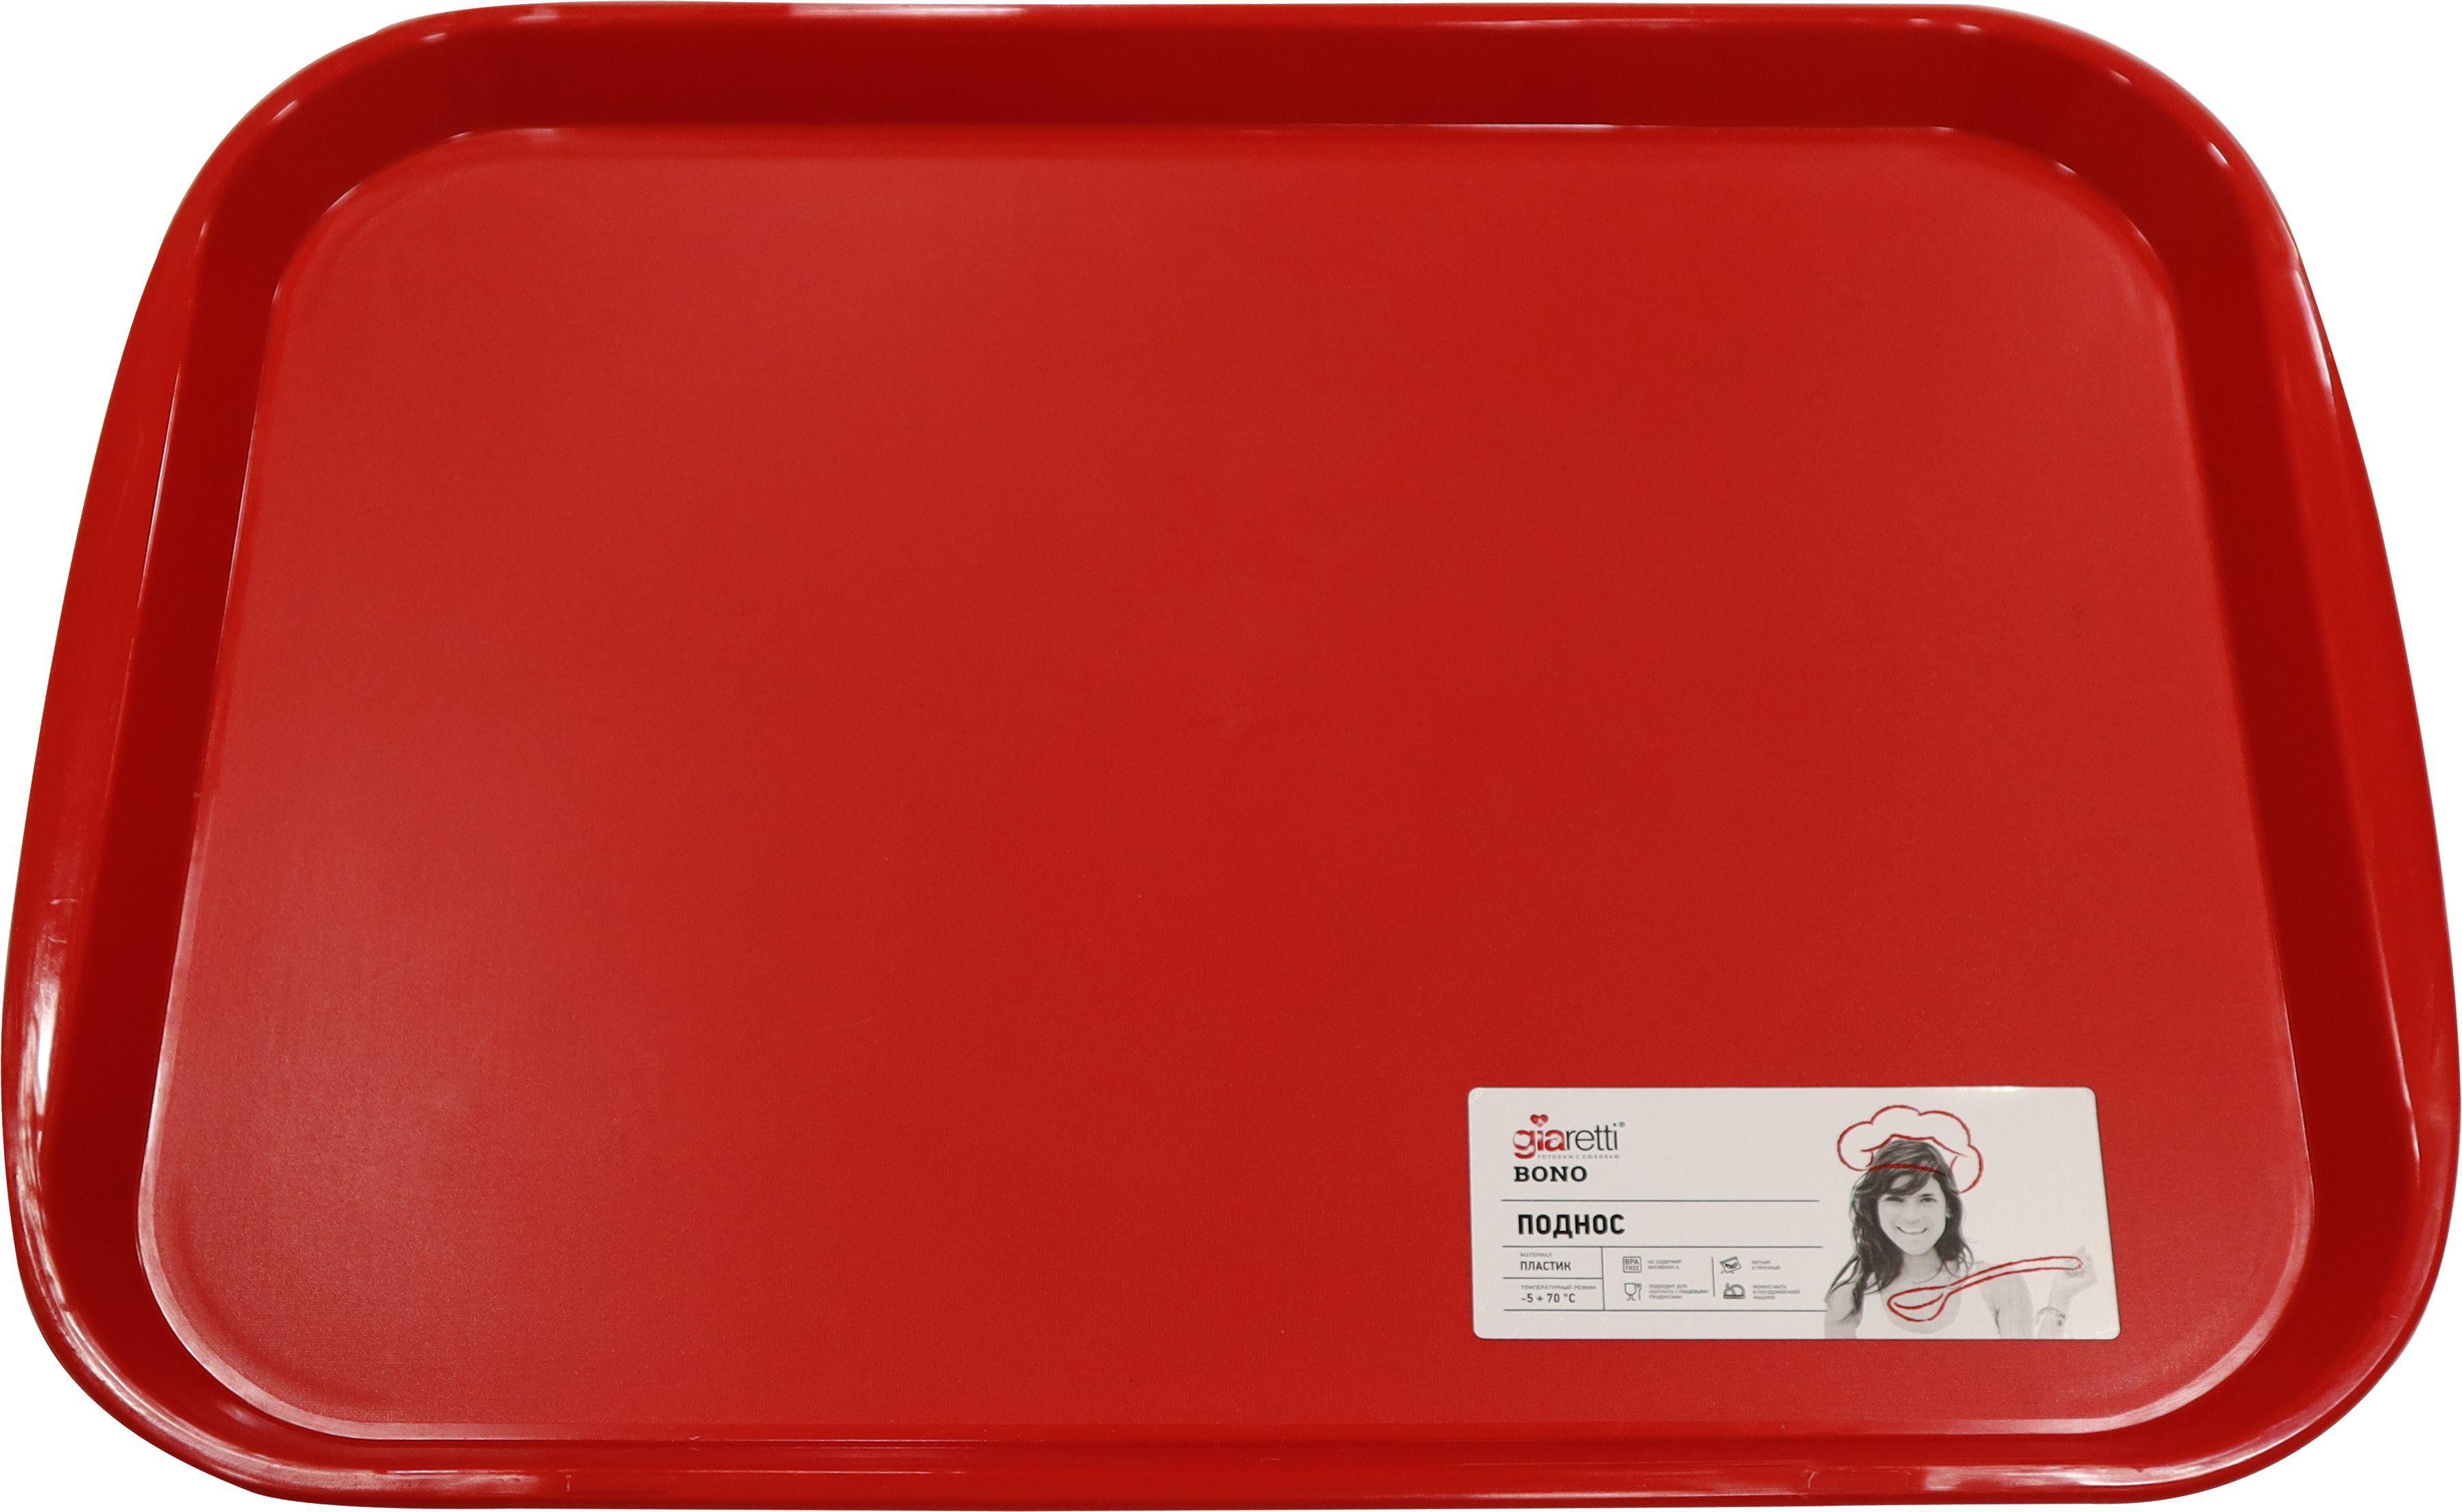 фото Поднос giaretti bono 470х355х25 мм цвета сочный томат